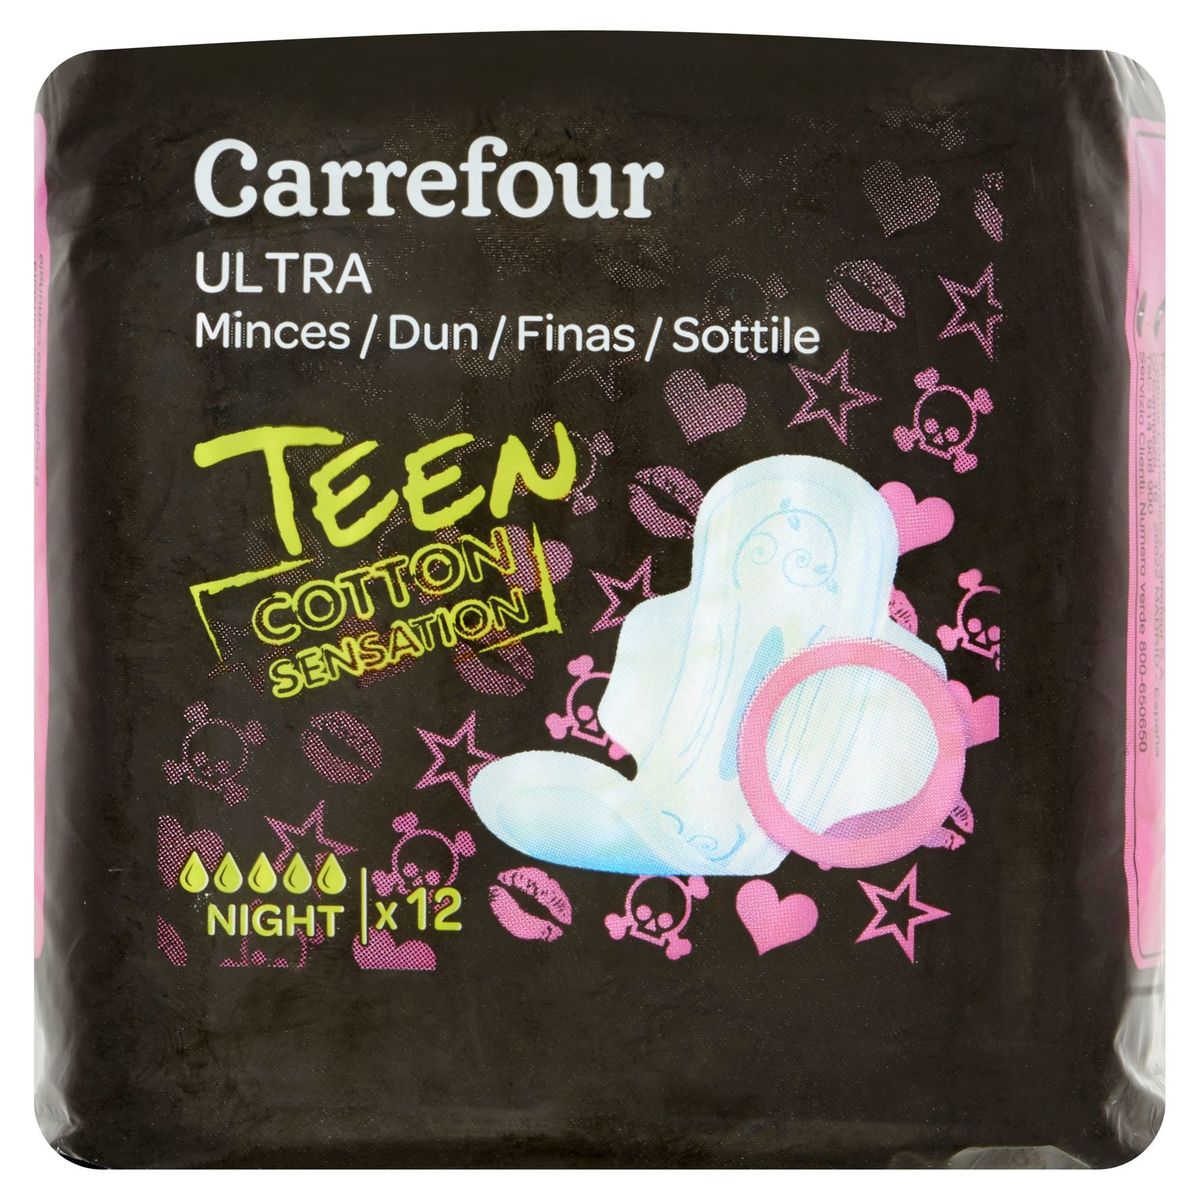 Carrefour Serviettes Ultra Minces Teen Cotton Sensation Night x 12